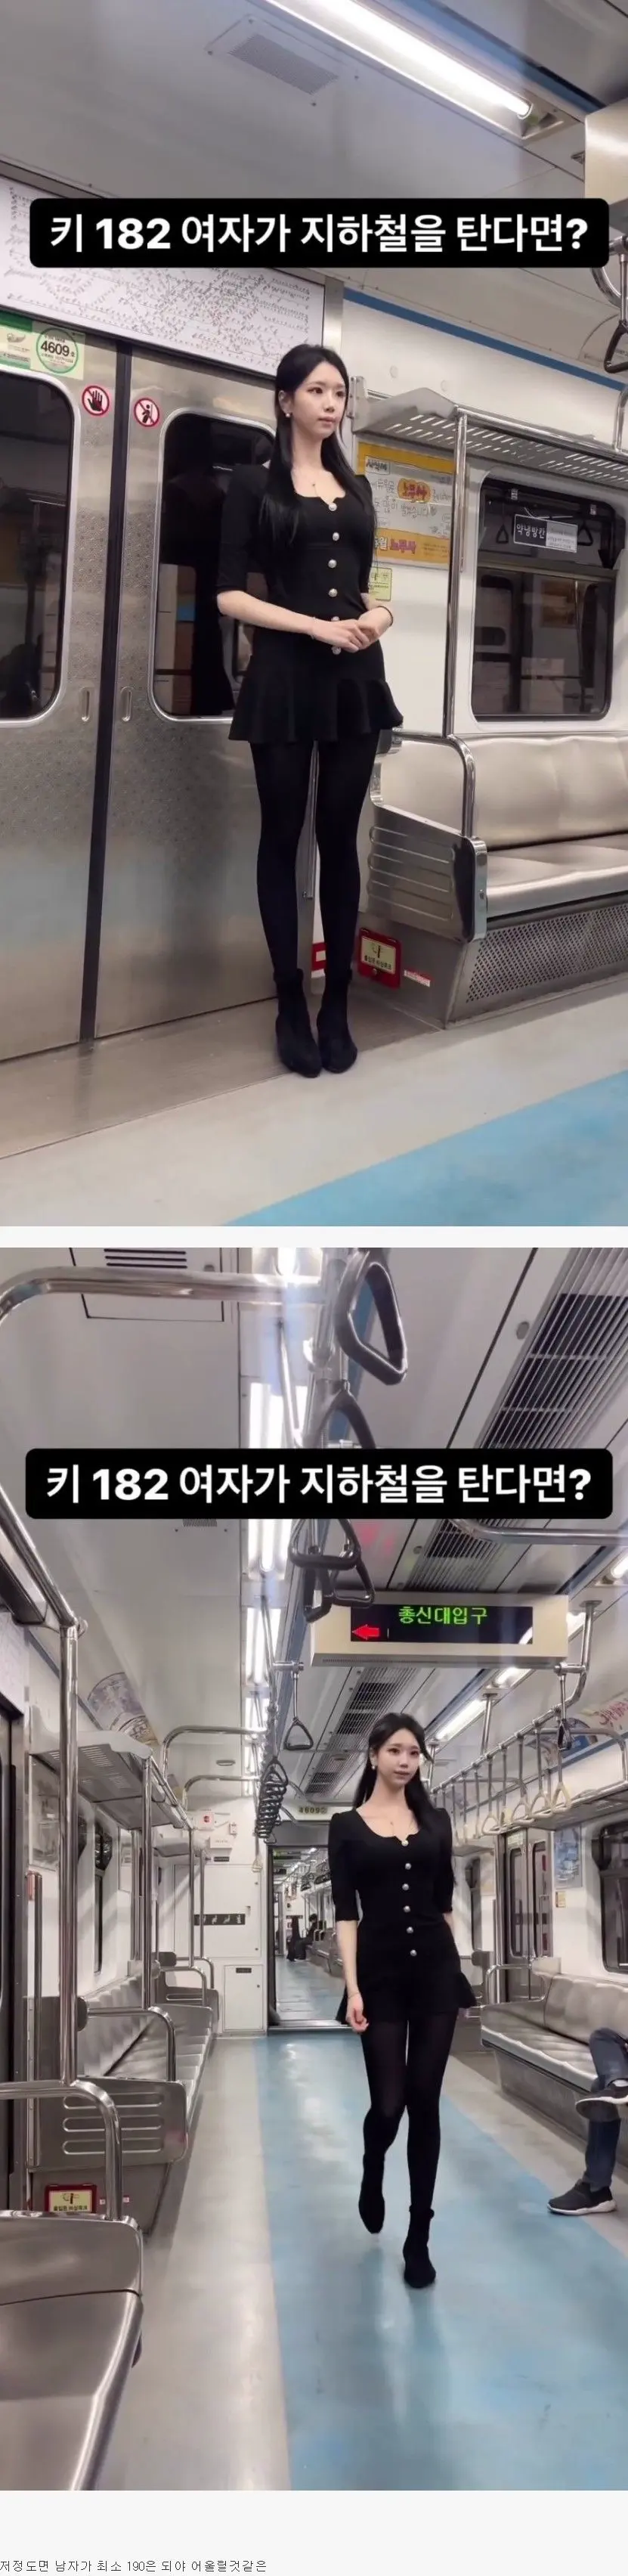 키 182cm 여성이 지하철을 탄다면? | mbong.kr 엠봉